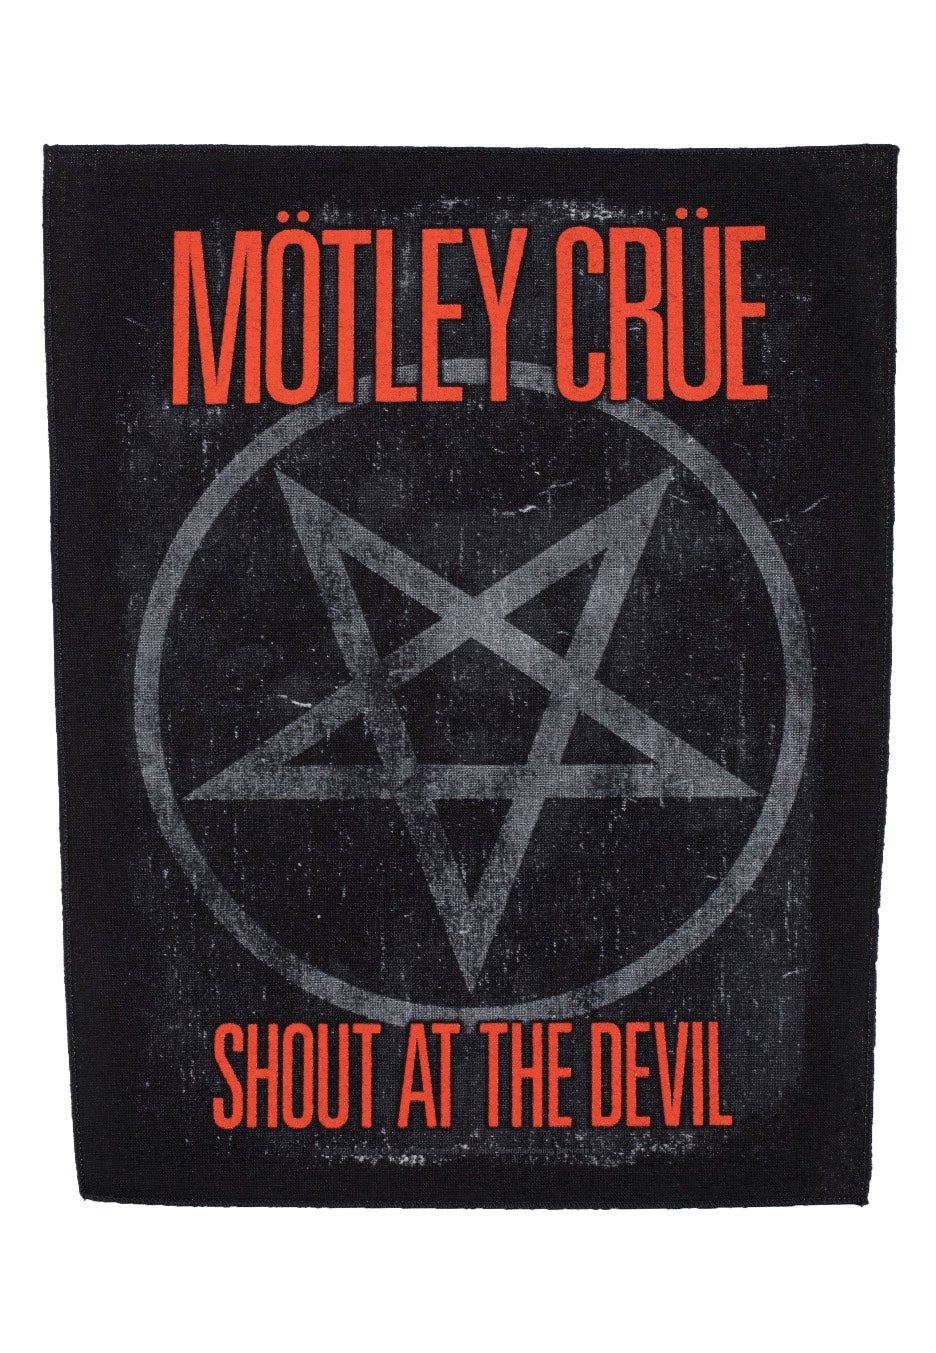 Mötley Crüe - Shout At The Devil - Backpatch